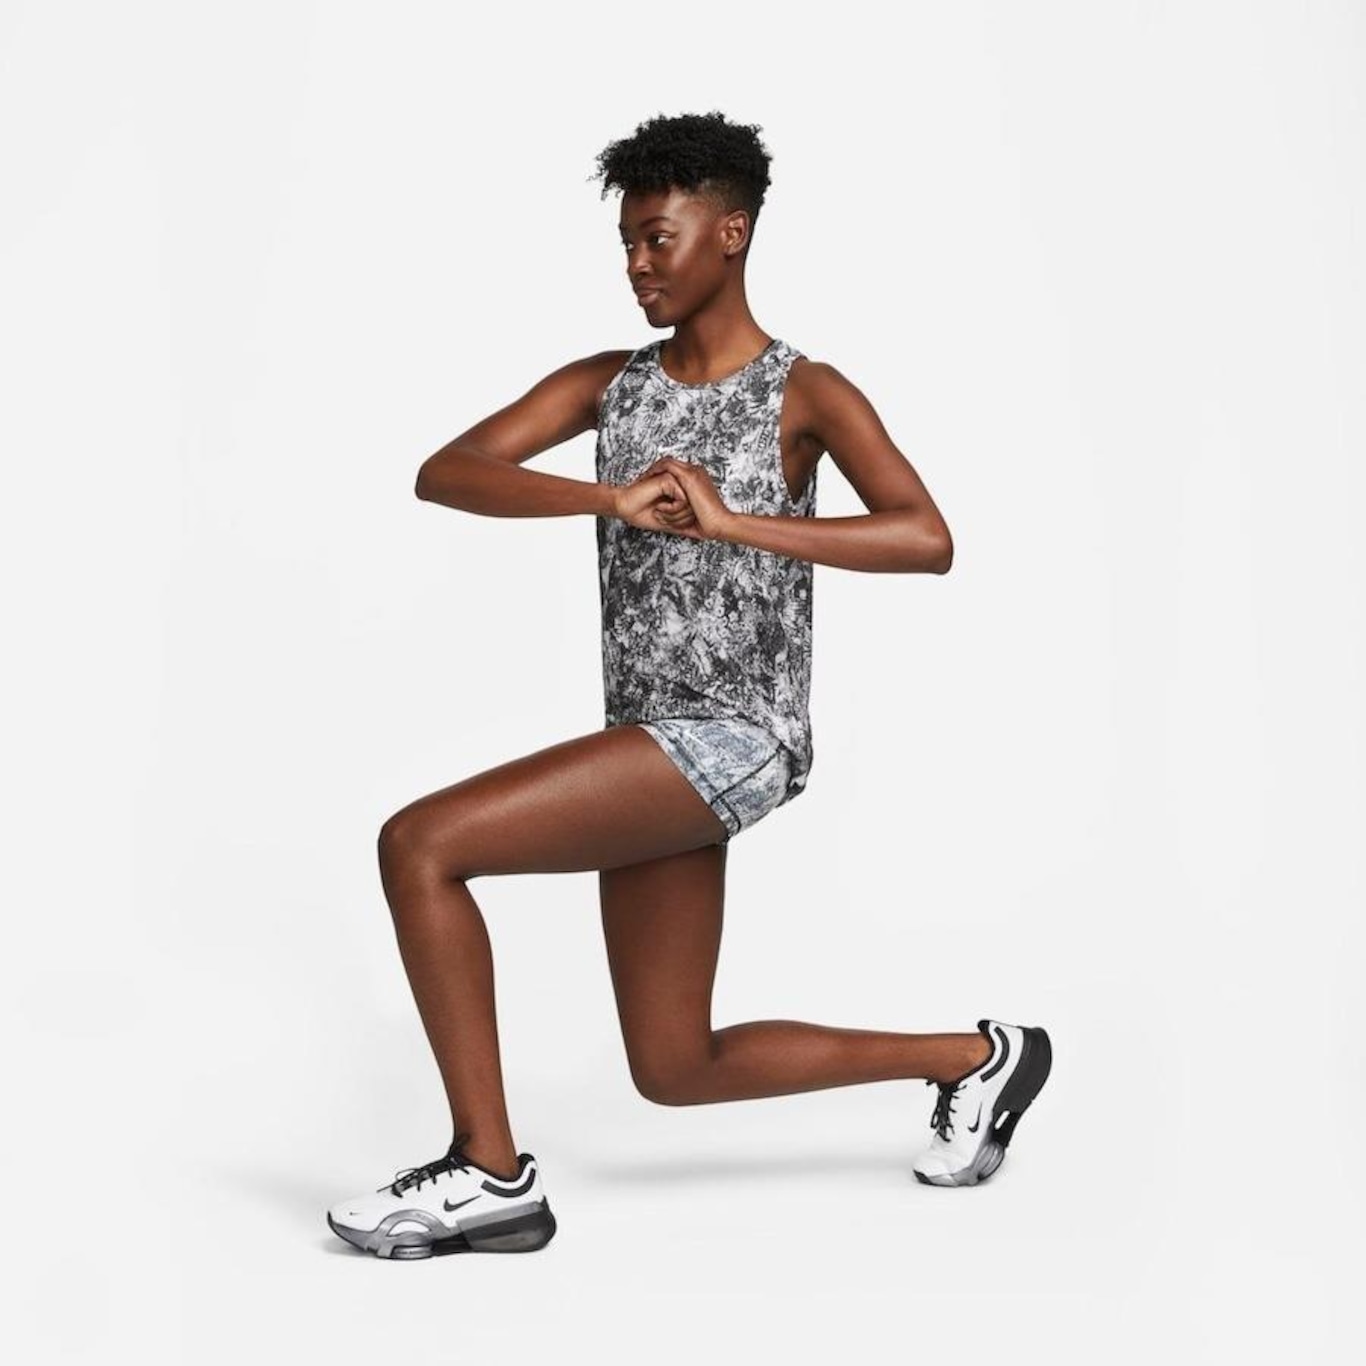 Shorts Nike Pro Dri-FIT - Feminino em Promoção